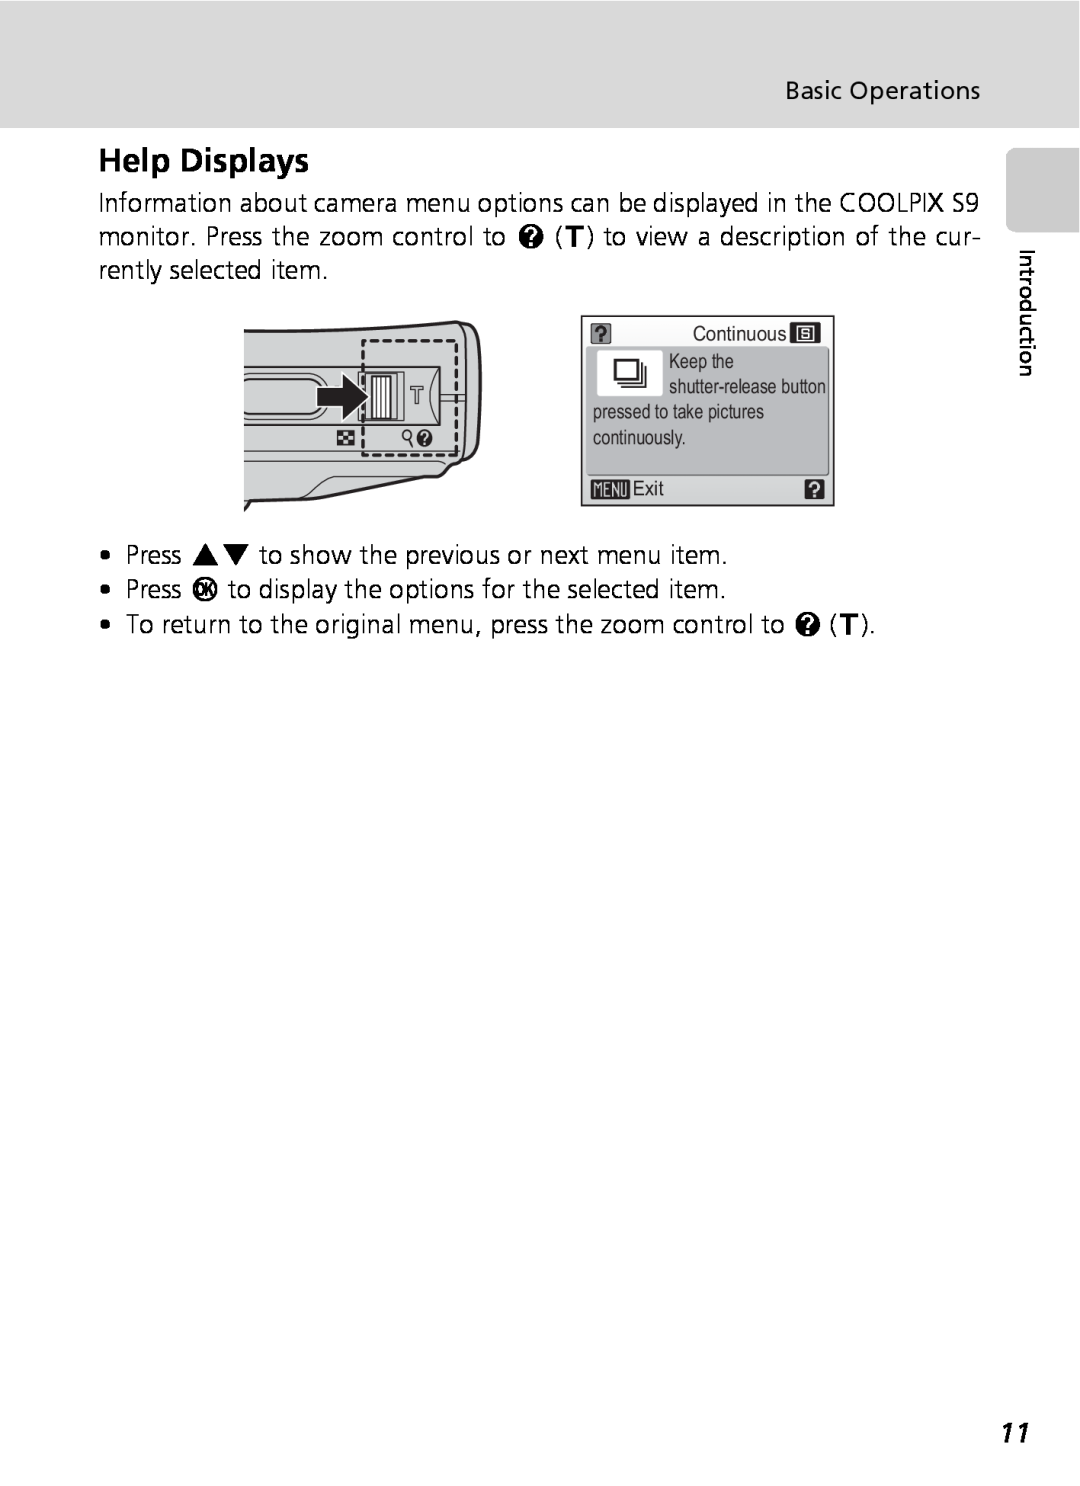 Nikon COOLPIXS9 manual Help Displays 